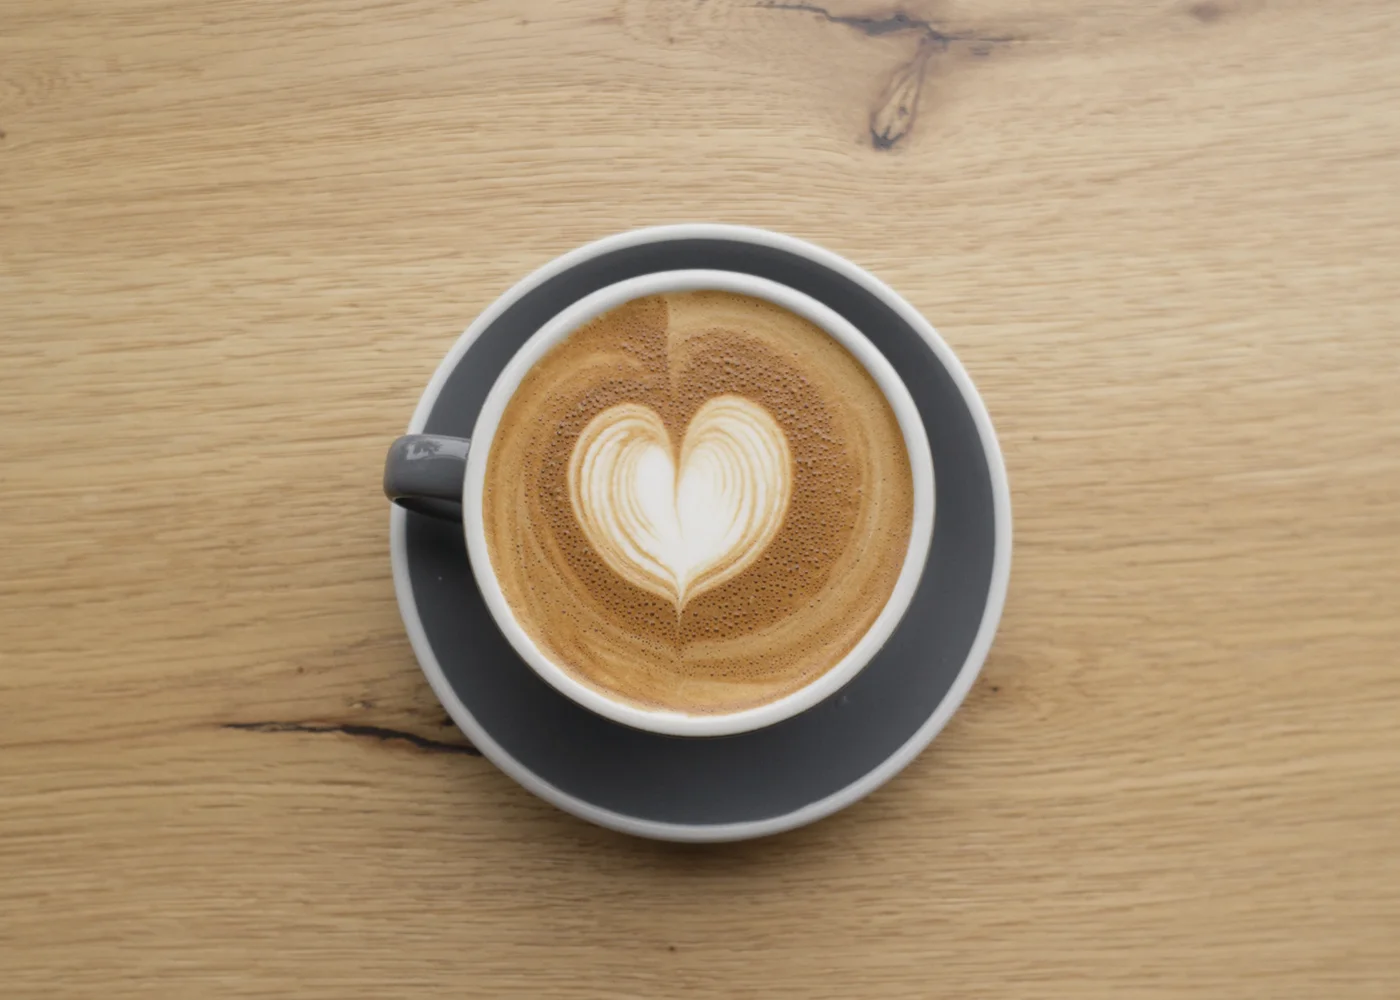 Underground Coffee Roasters barista tips on latte art — the heart latte art